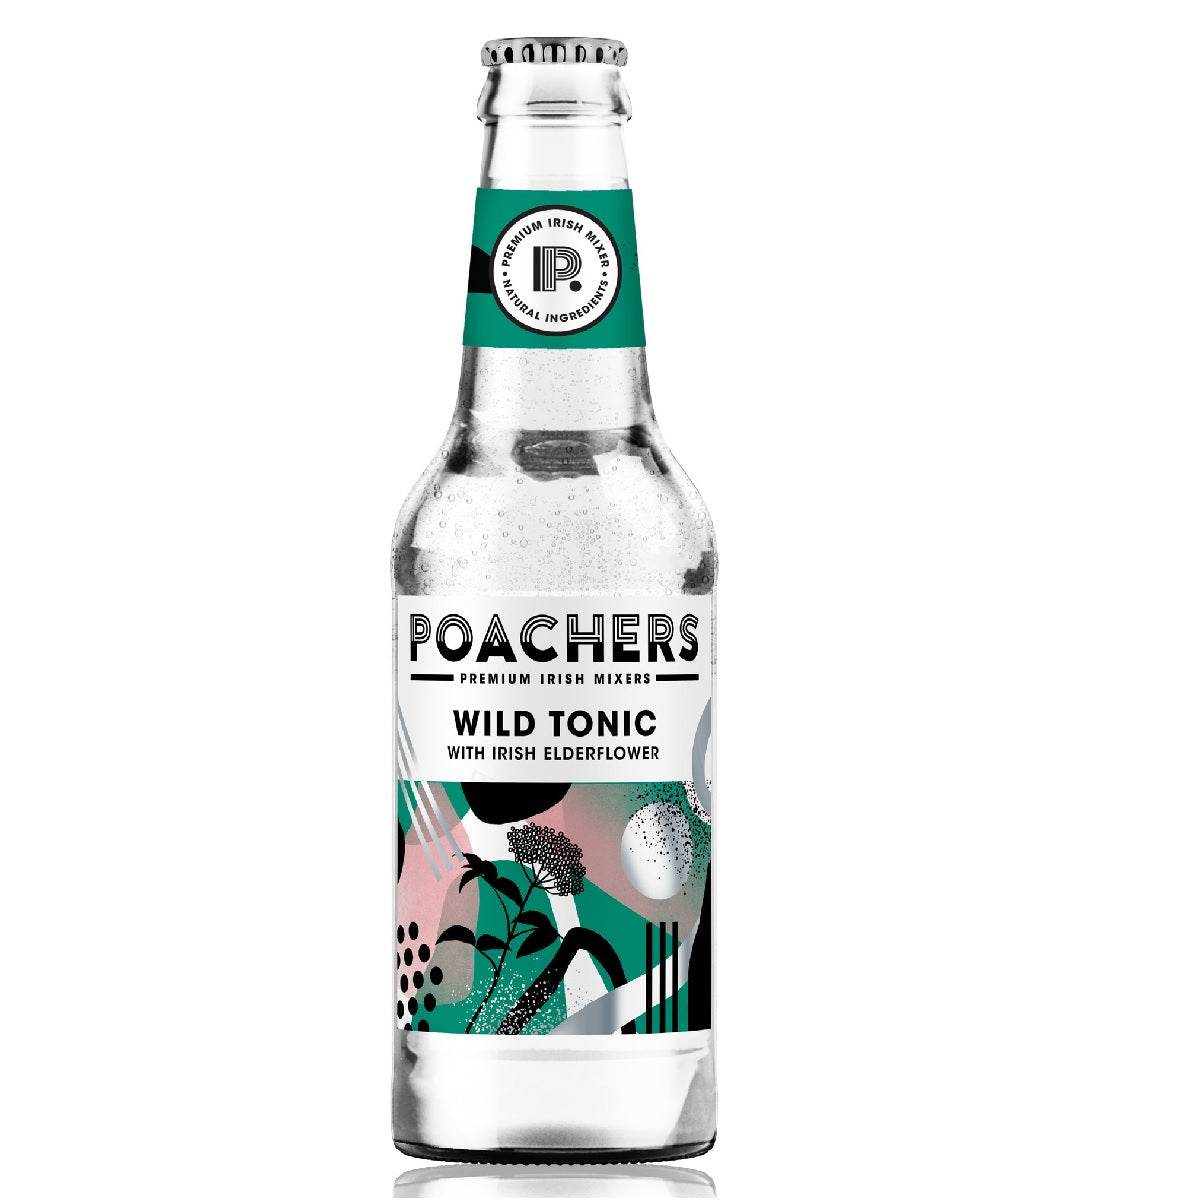 Poachers Premium Irish Mixers Wild Tonic with Irish Elderflower 200ml